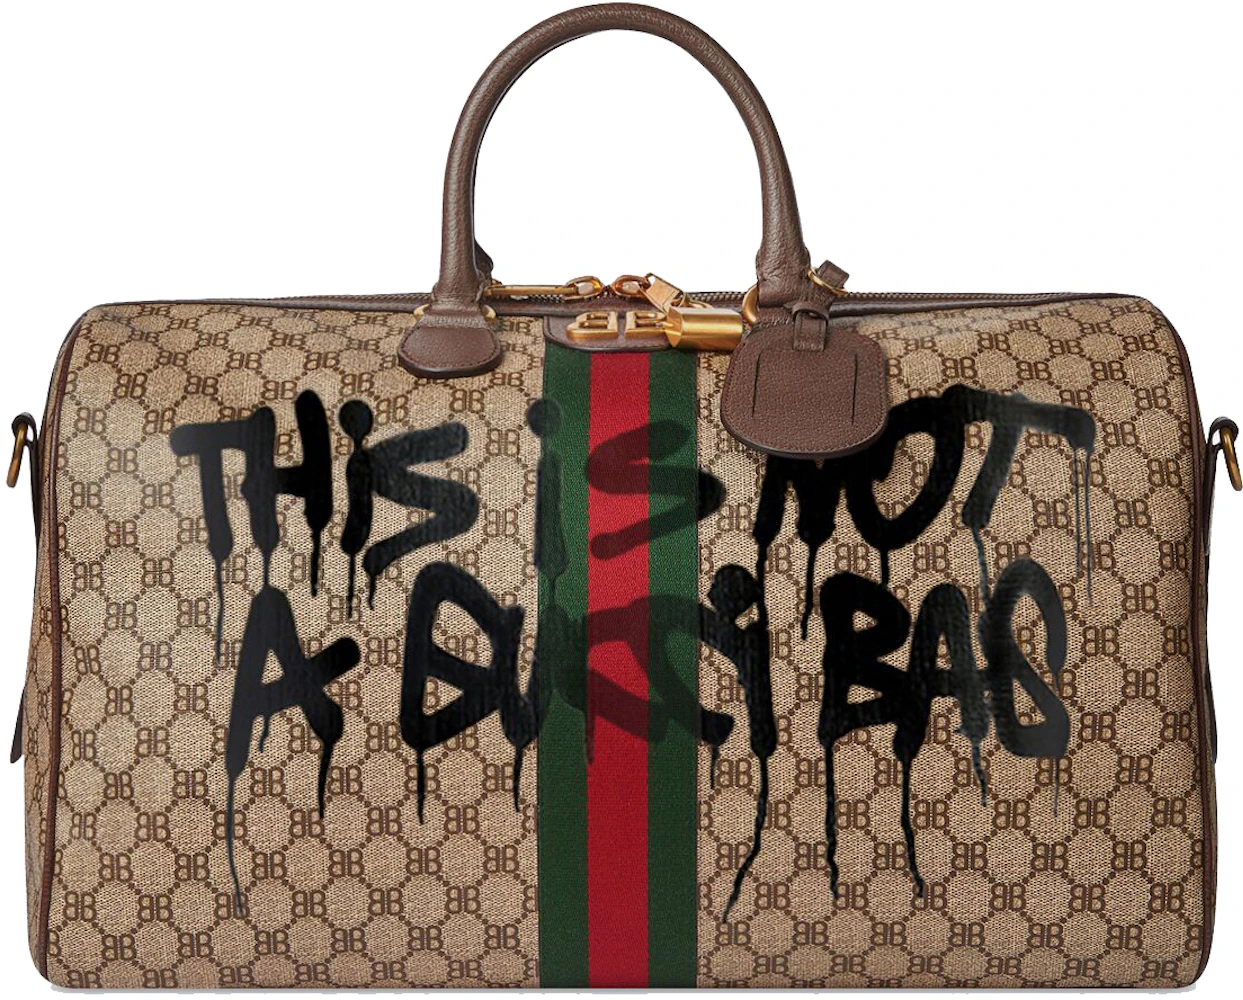 BALENCIAGA Gucci Collaboration The Hacker Project GraffitiTote Bag